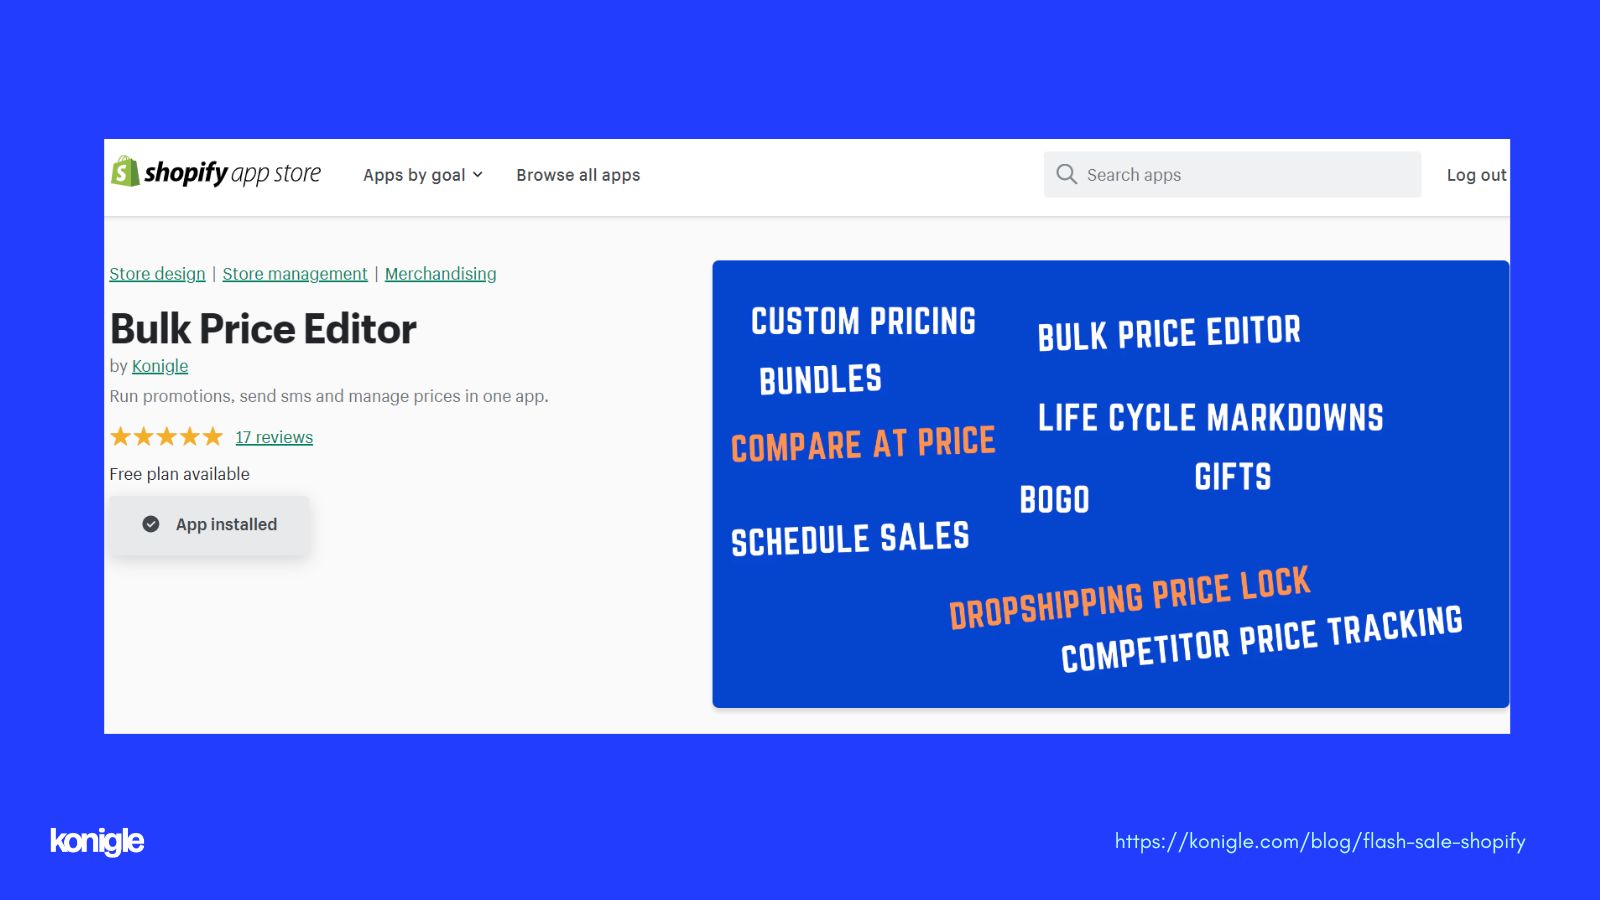 <b><i>Bulk Price Editor in Shopify</i></b>